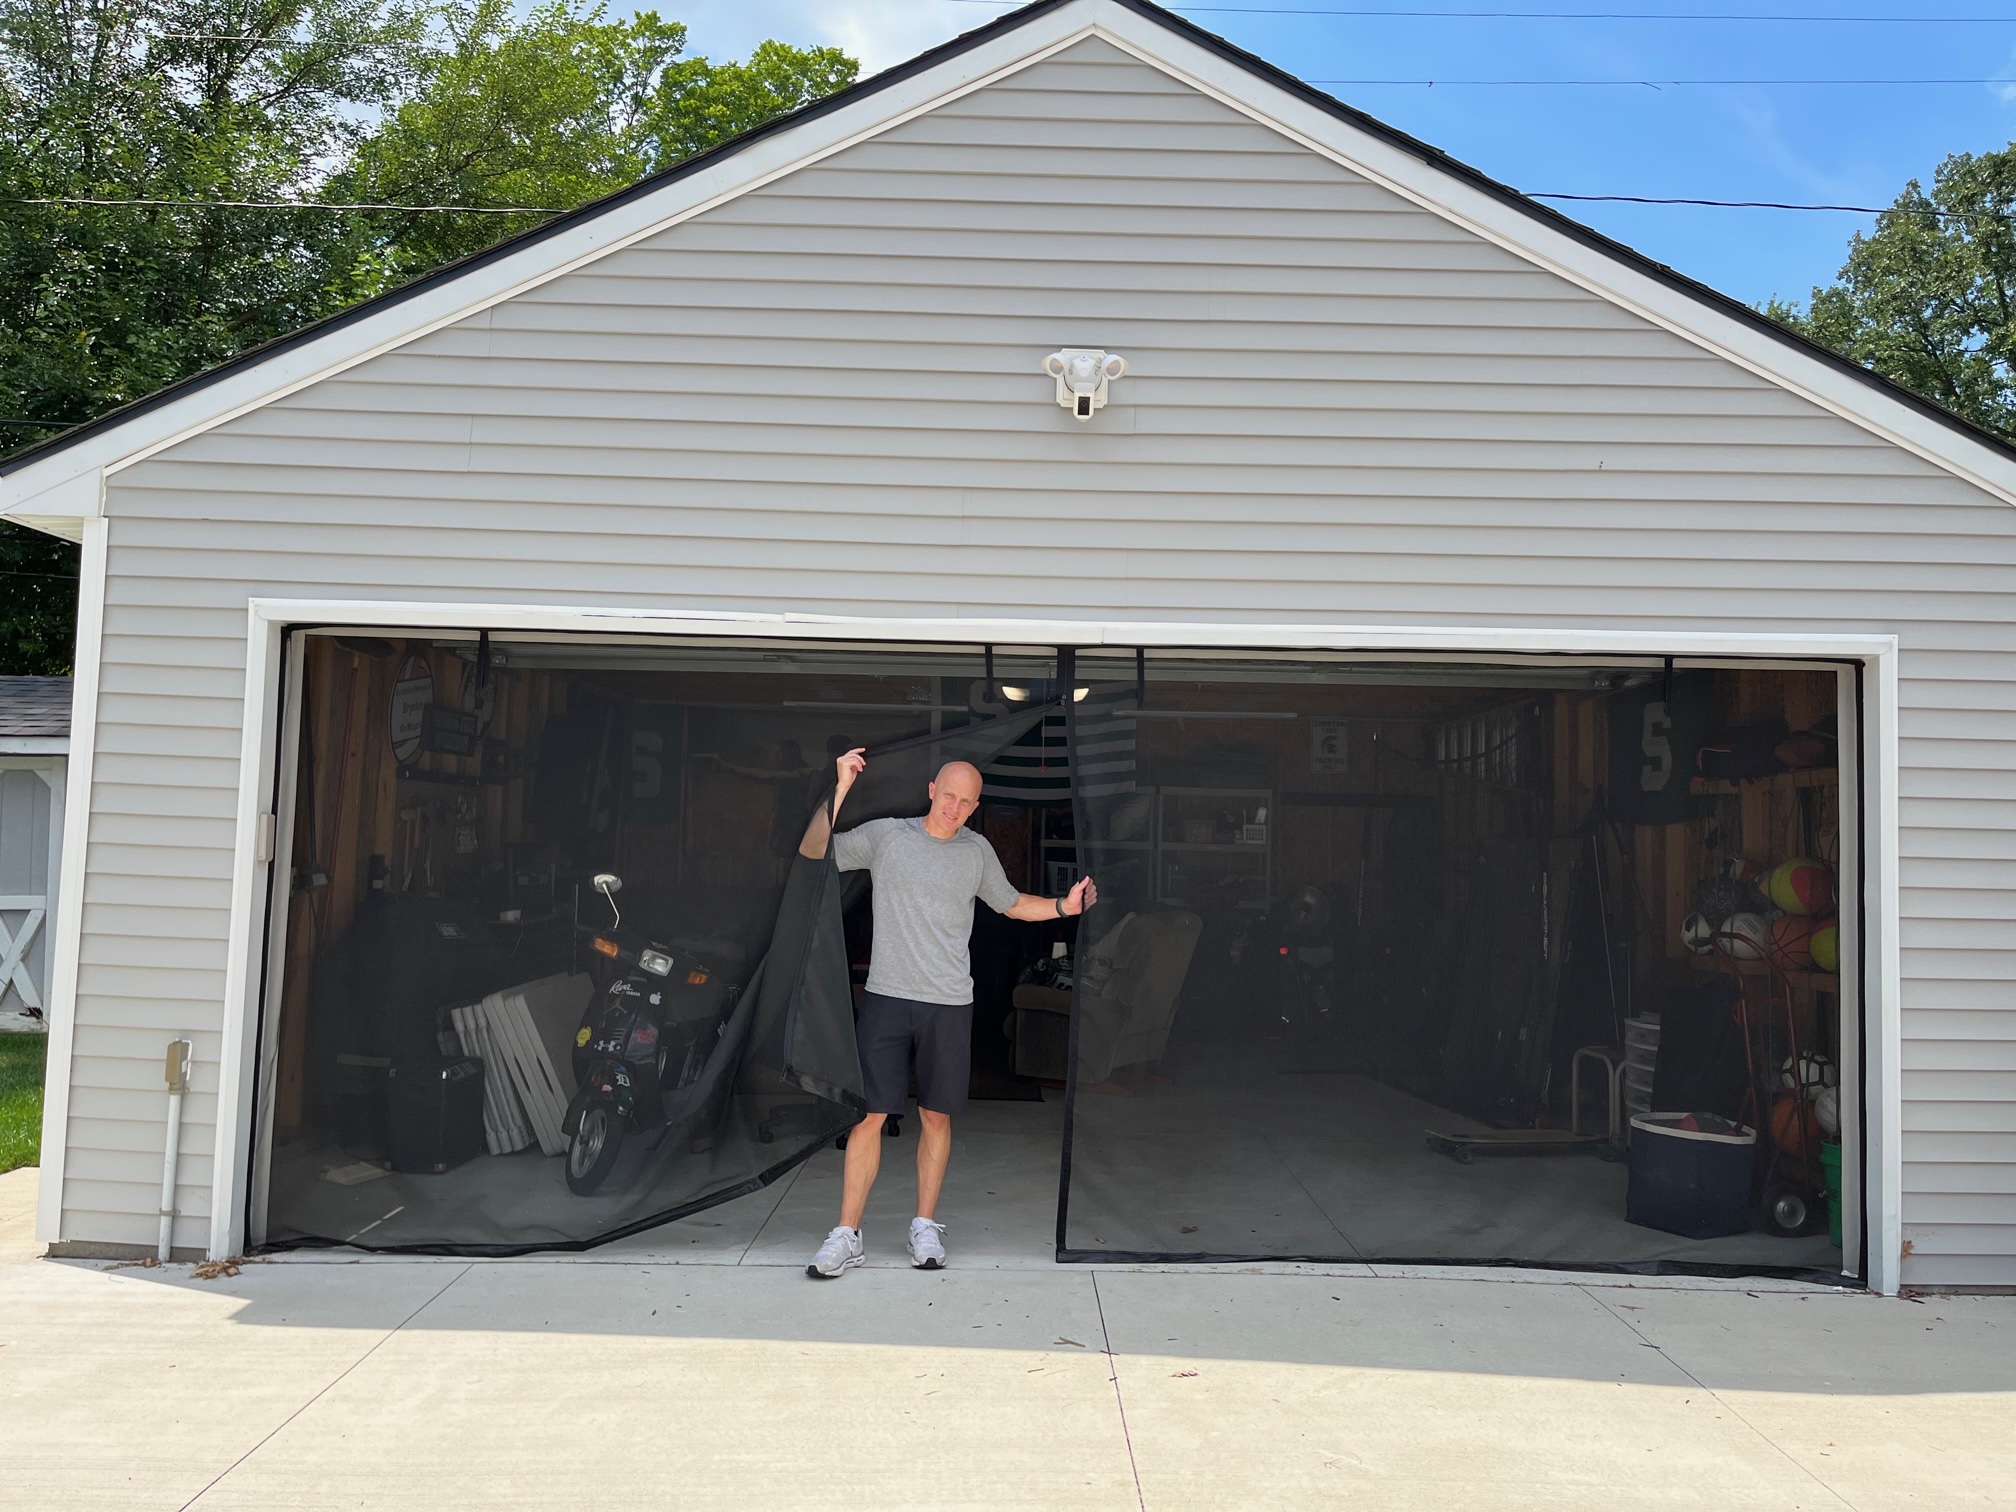 garage door screens retractable